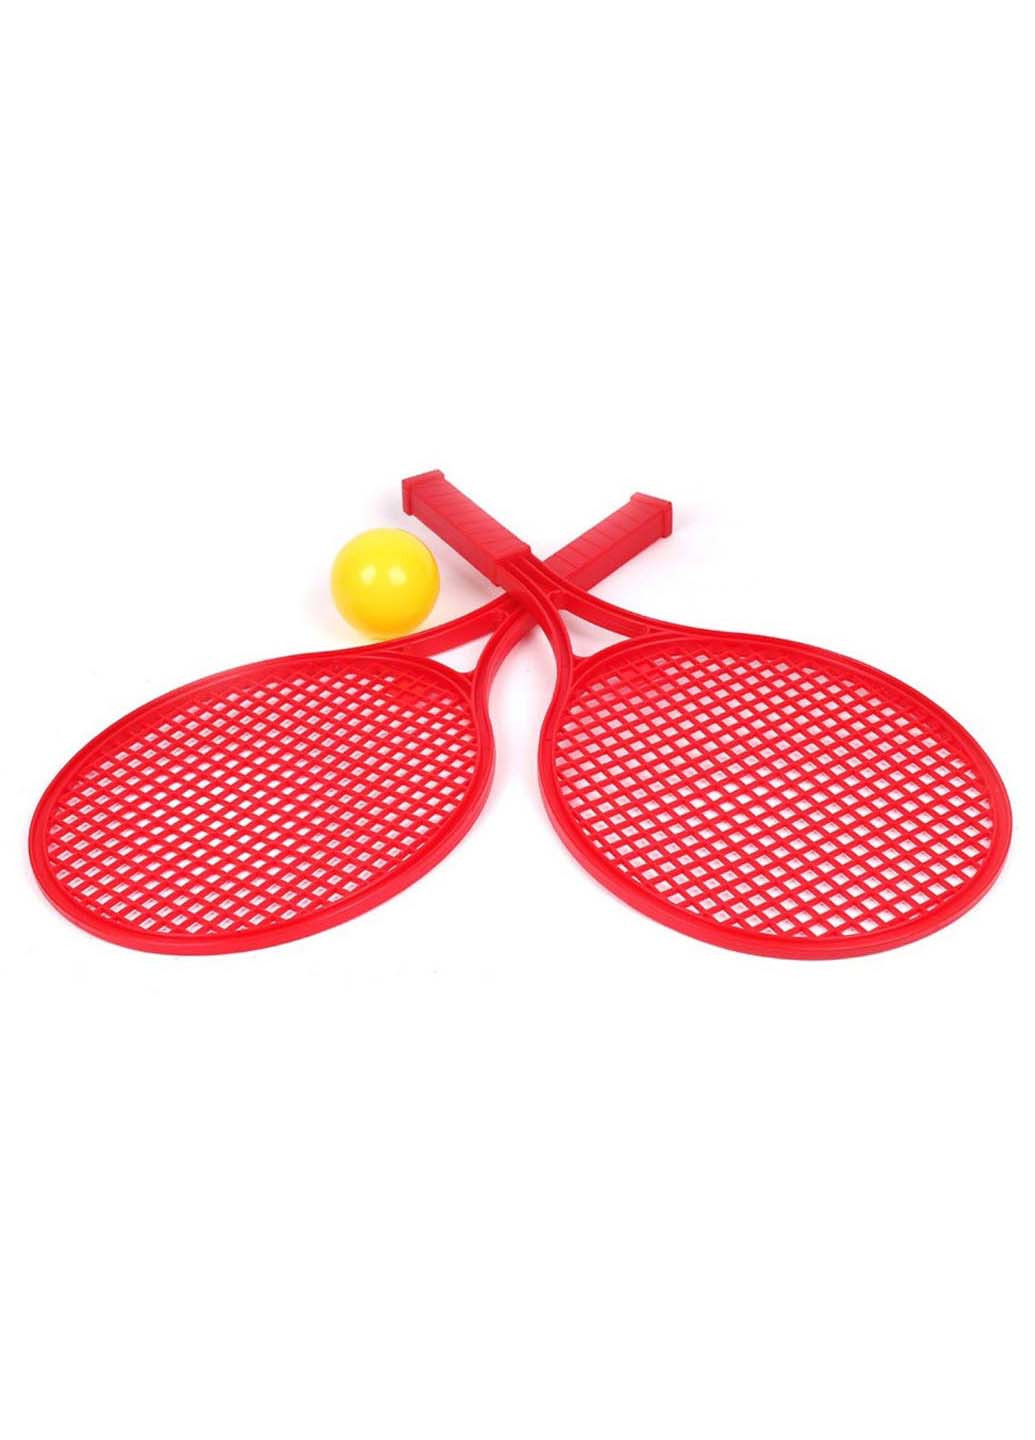 Игровой набор для игры в теннис 2 ракетки+мячик ТехноК (255060129)